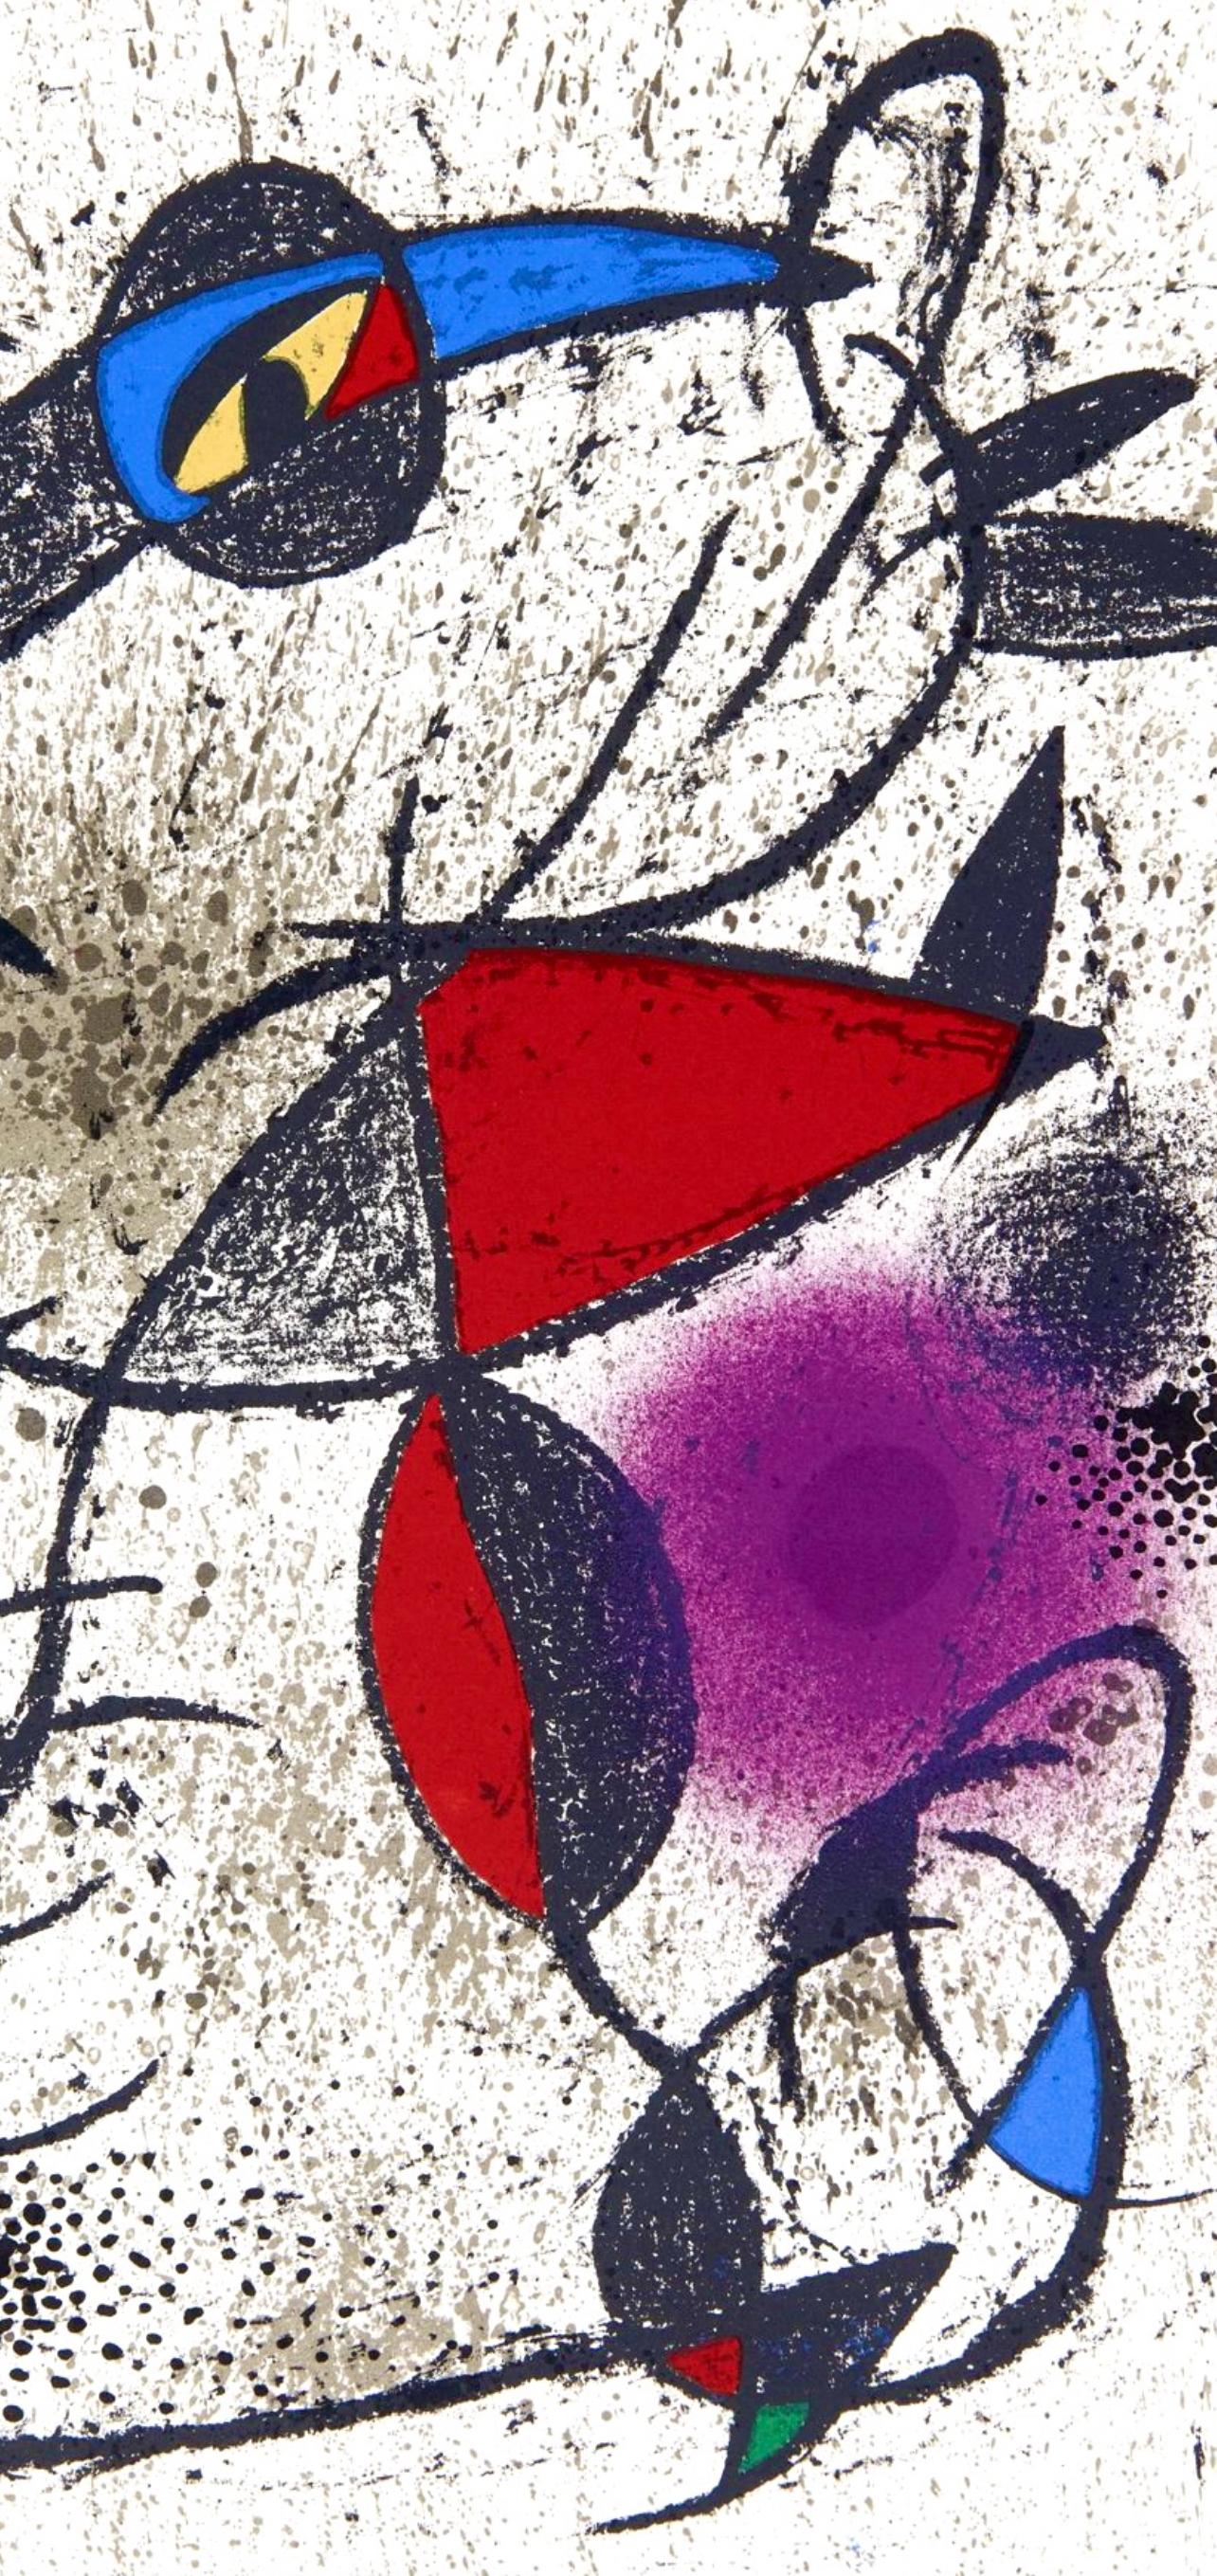 Miró, Faillie du calcaire, Souvenirs et portraits d'artistes (dopo) - Print Moderno di Joan Miró